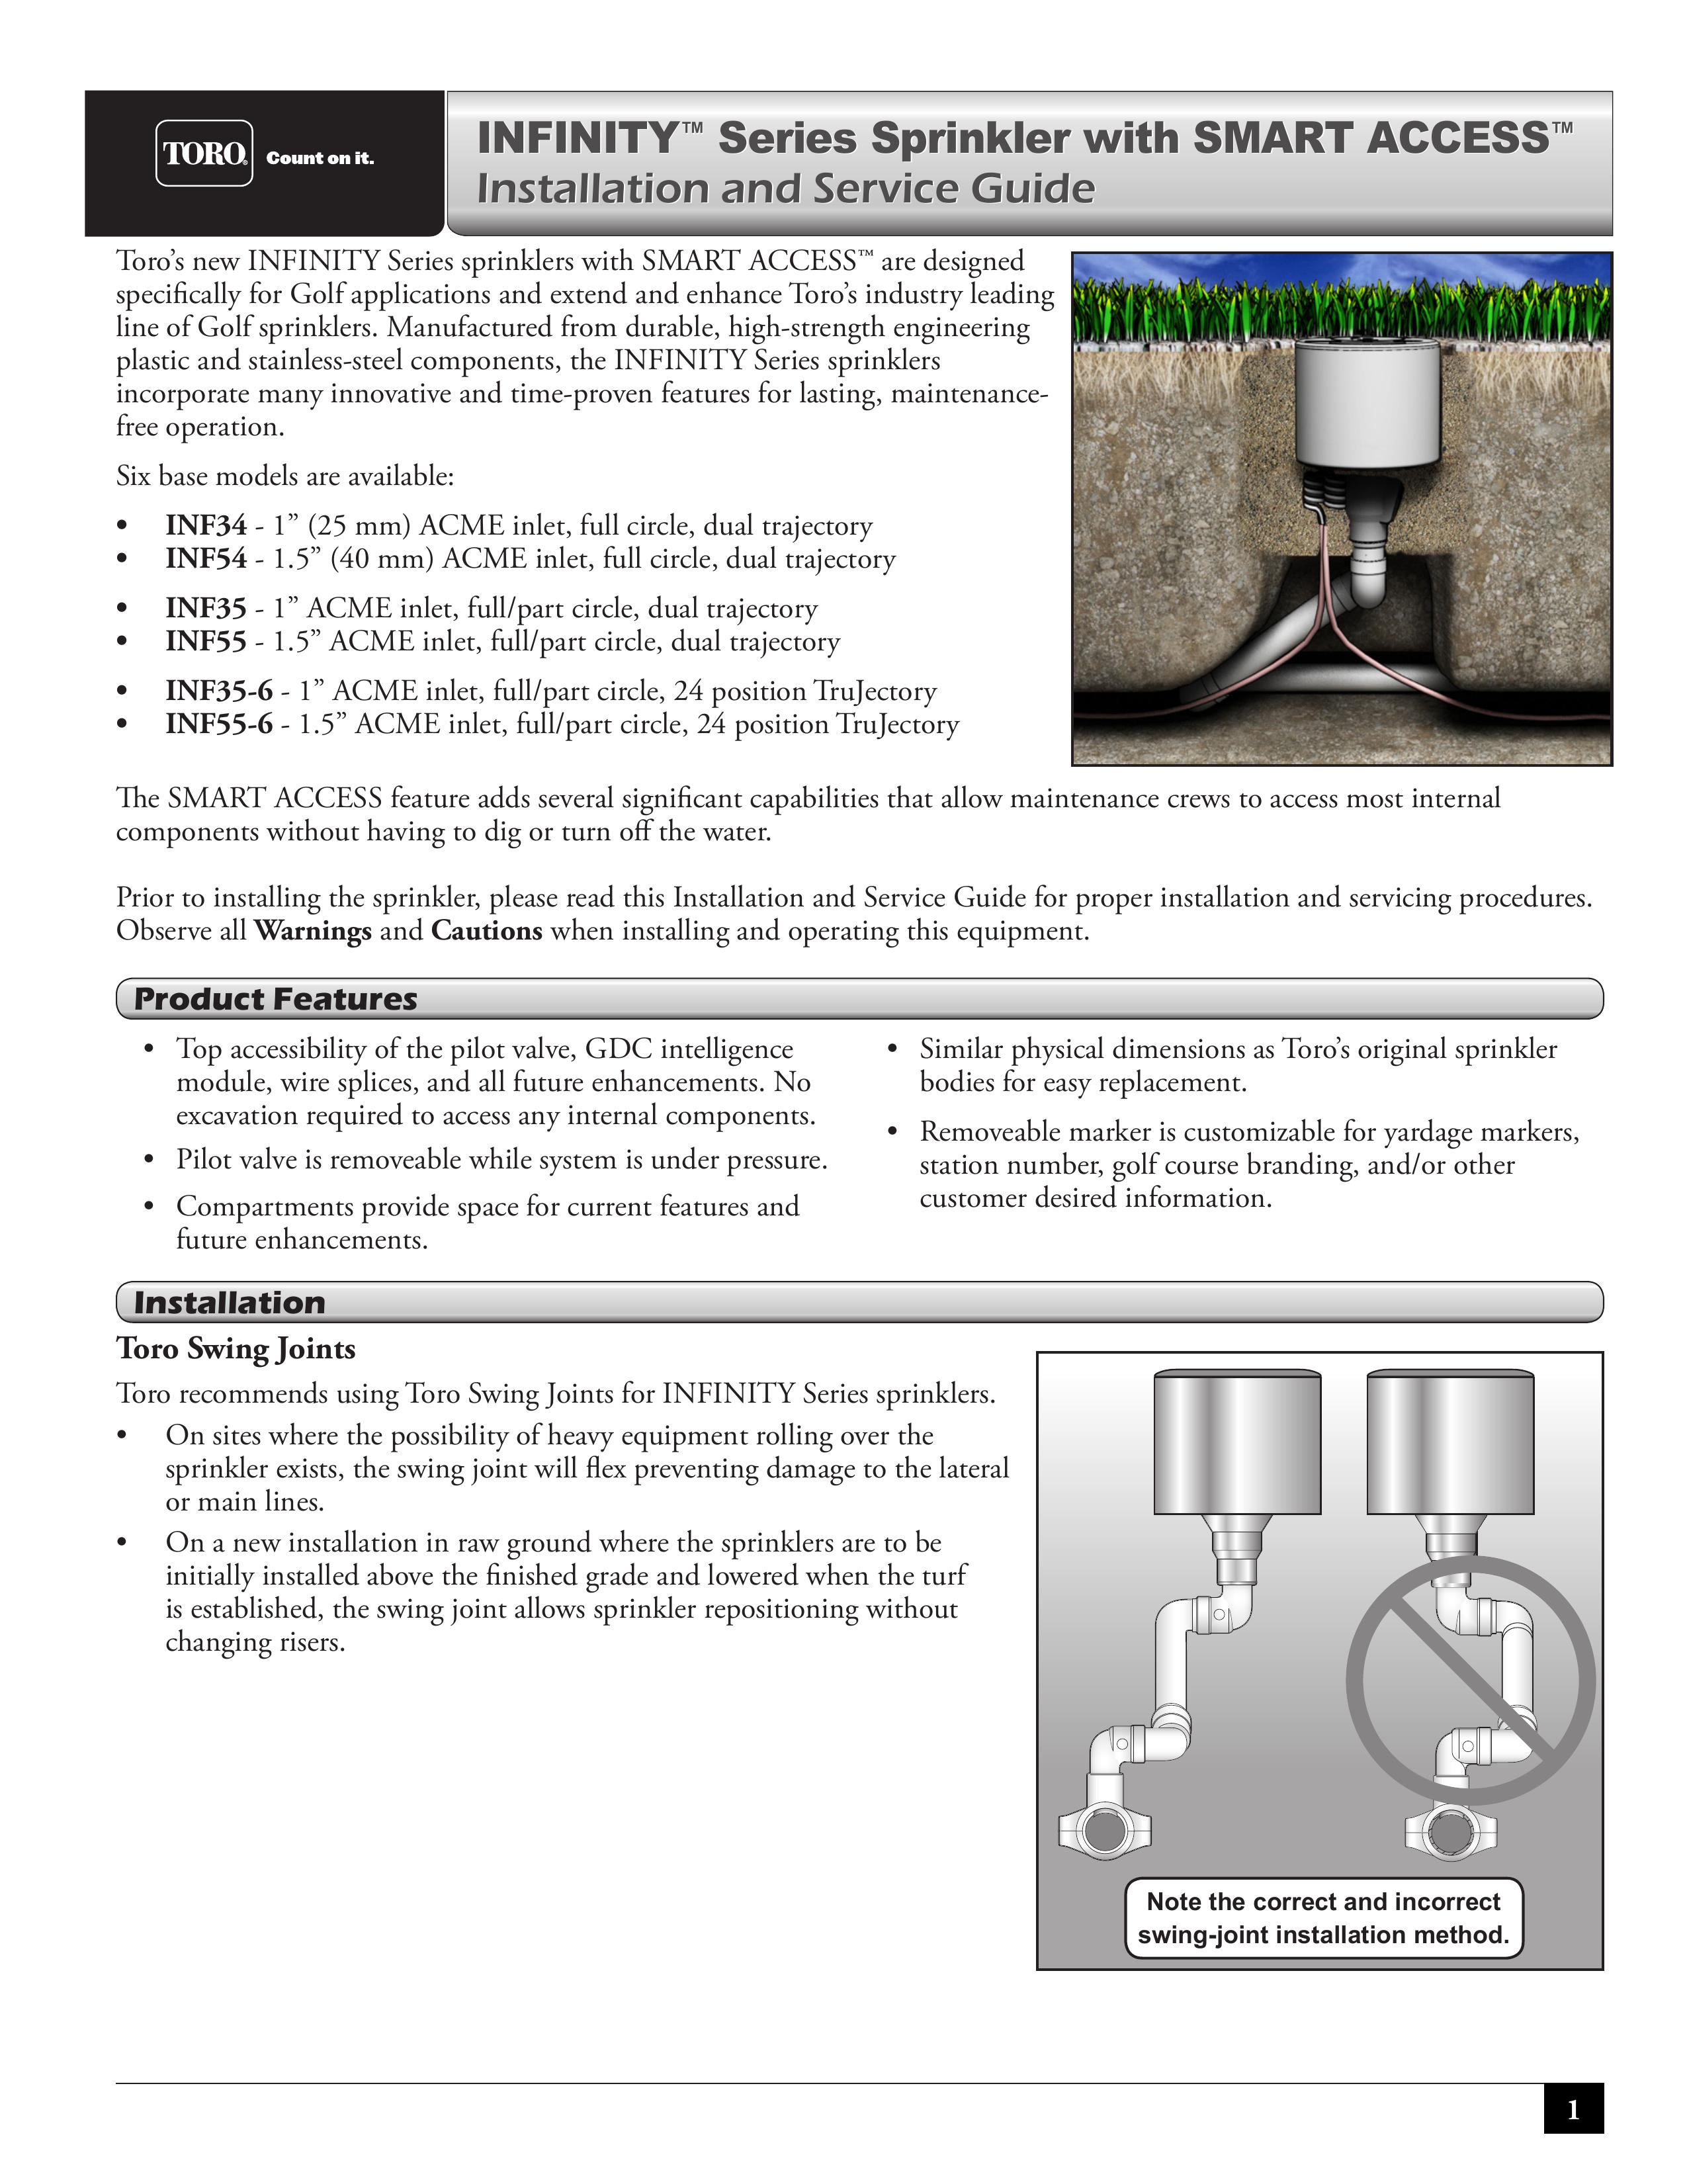 Toro INF35-6 Sprinkler User Manual